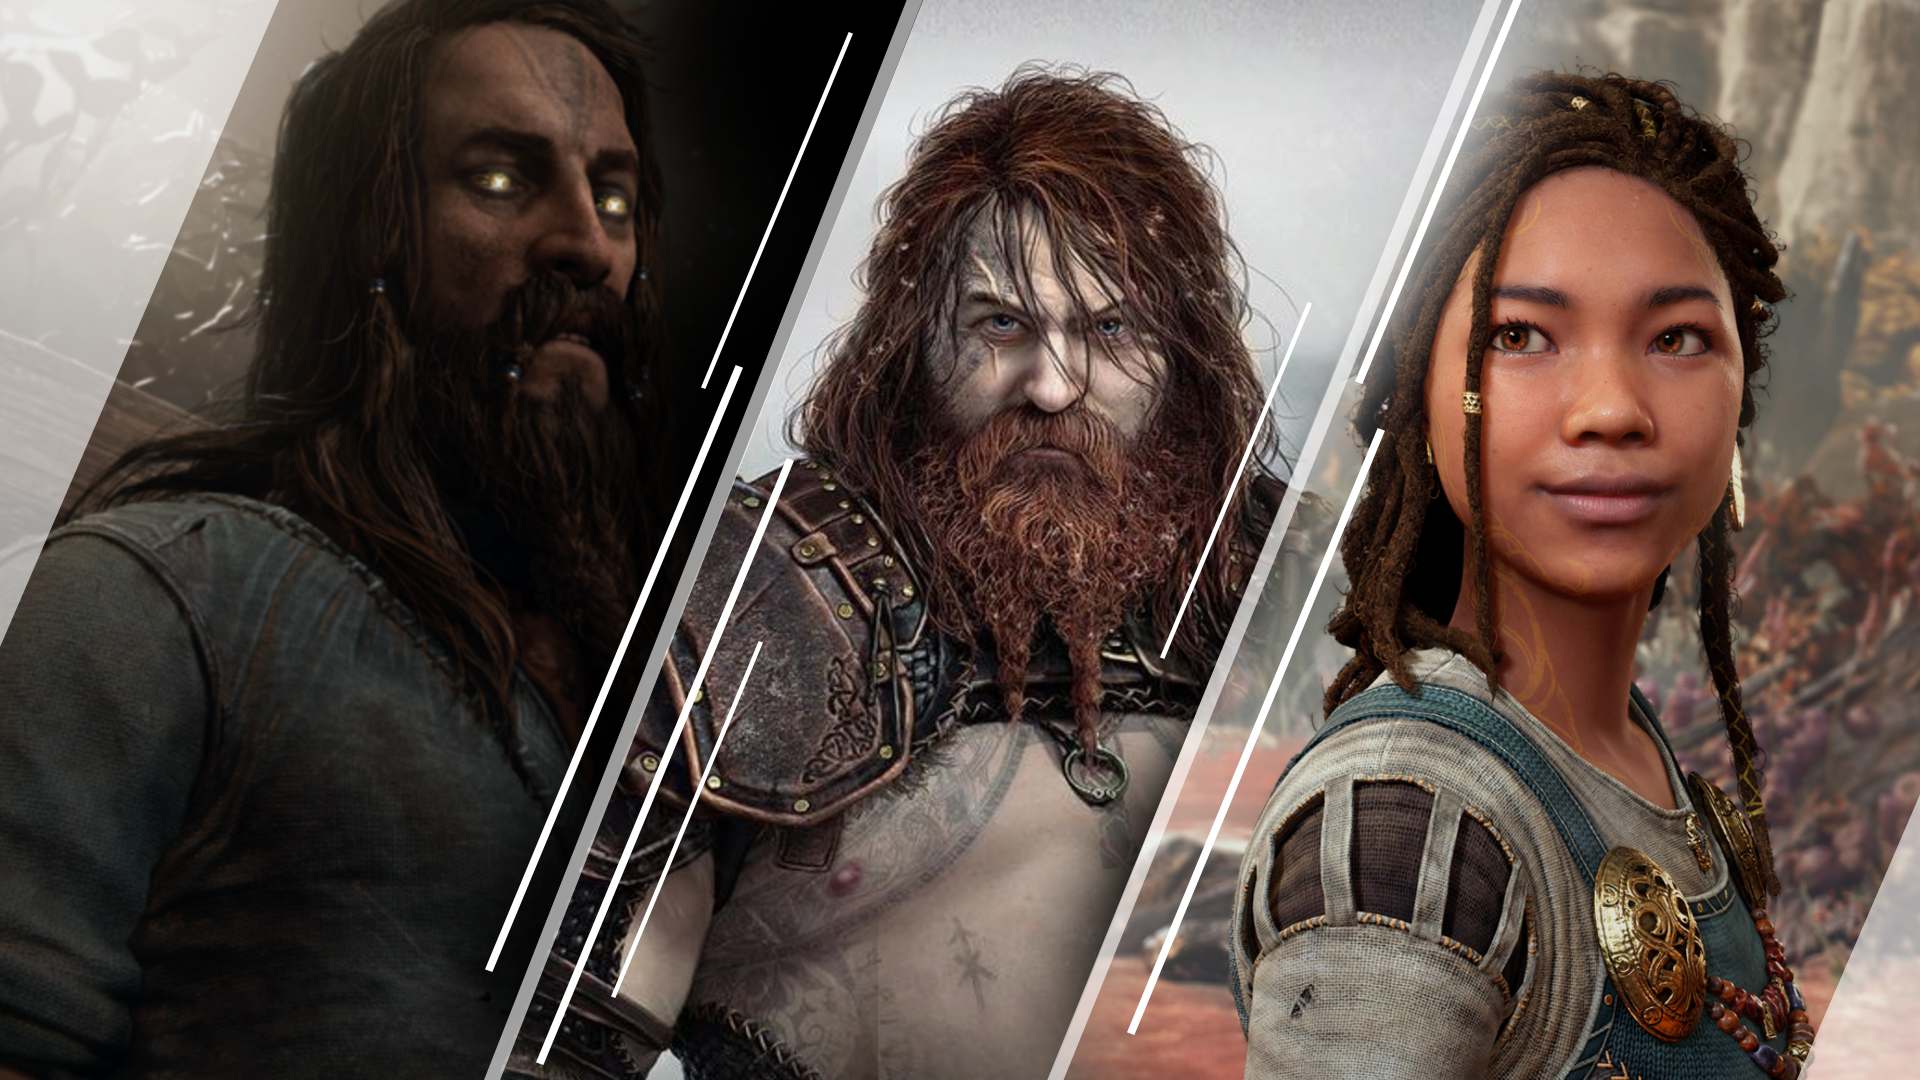 God of War Ragnarok: Tyr, Thor, Angrboda and more on PS5